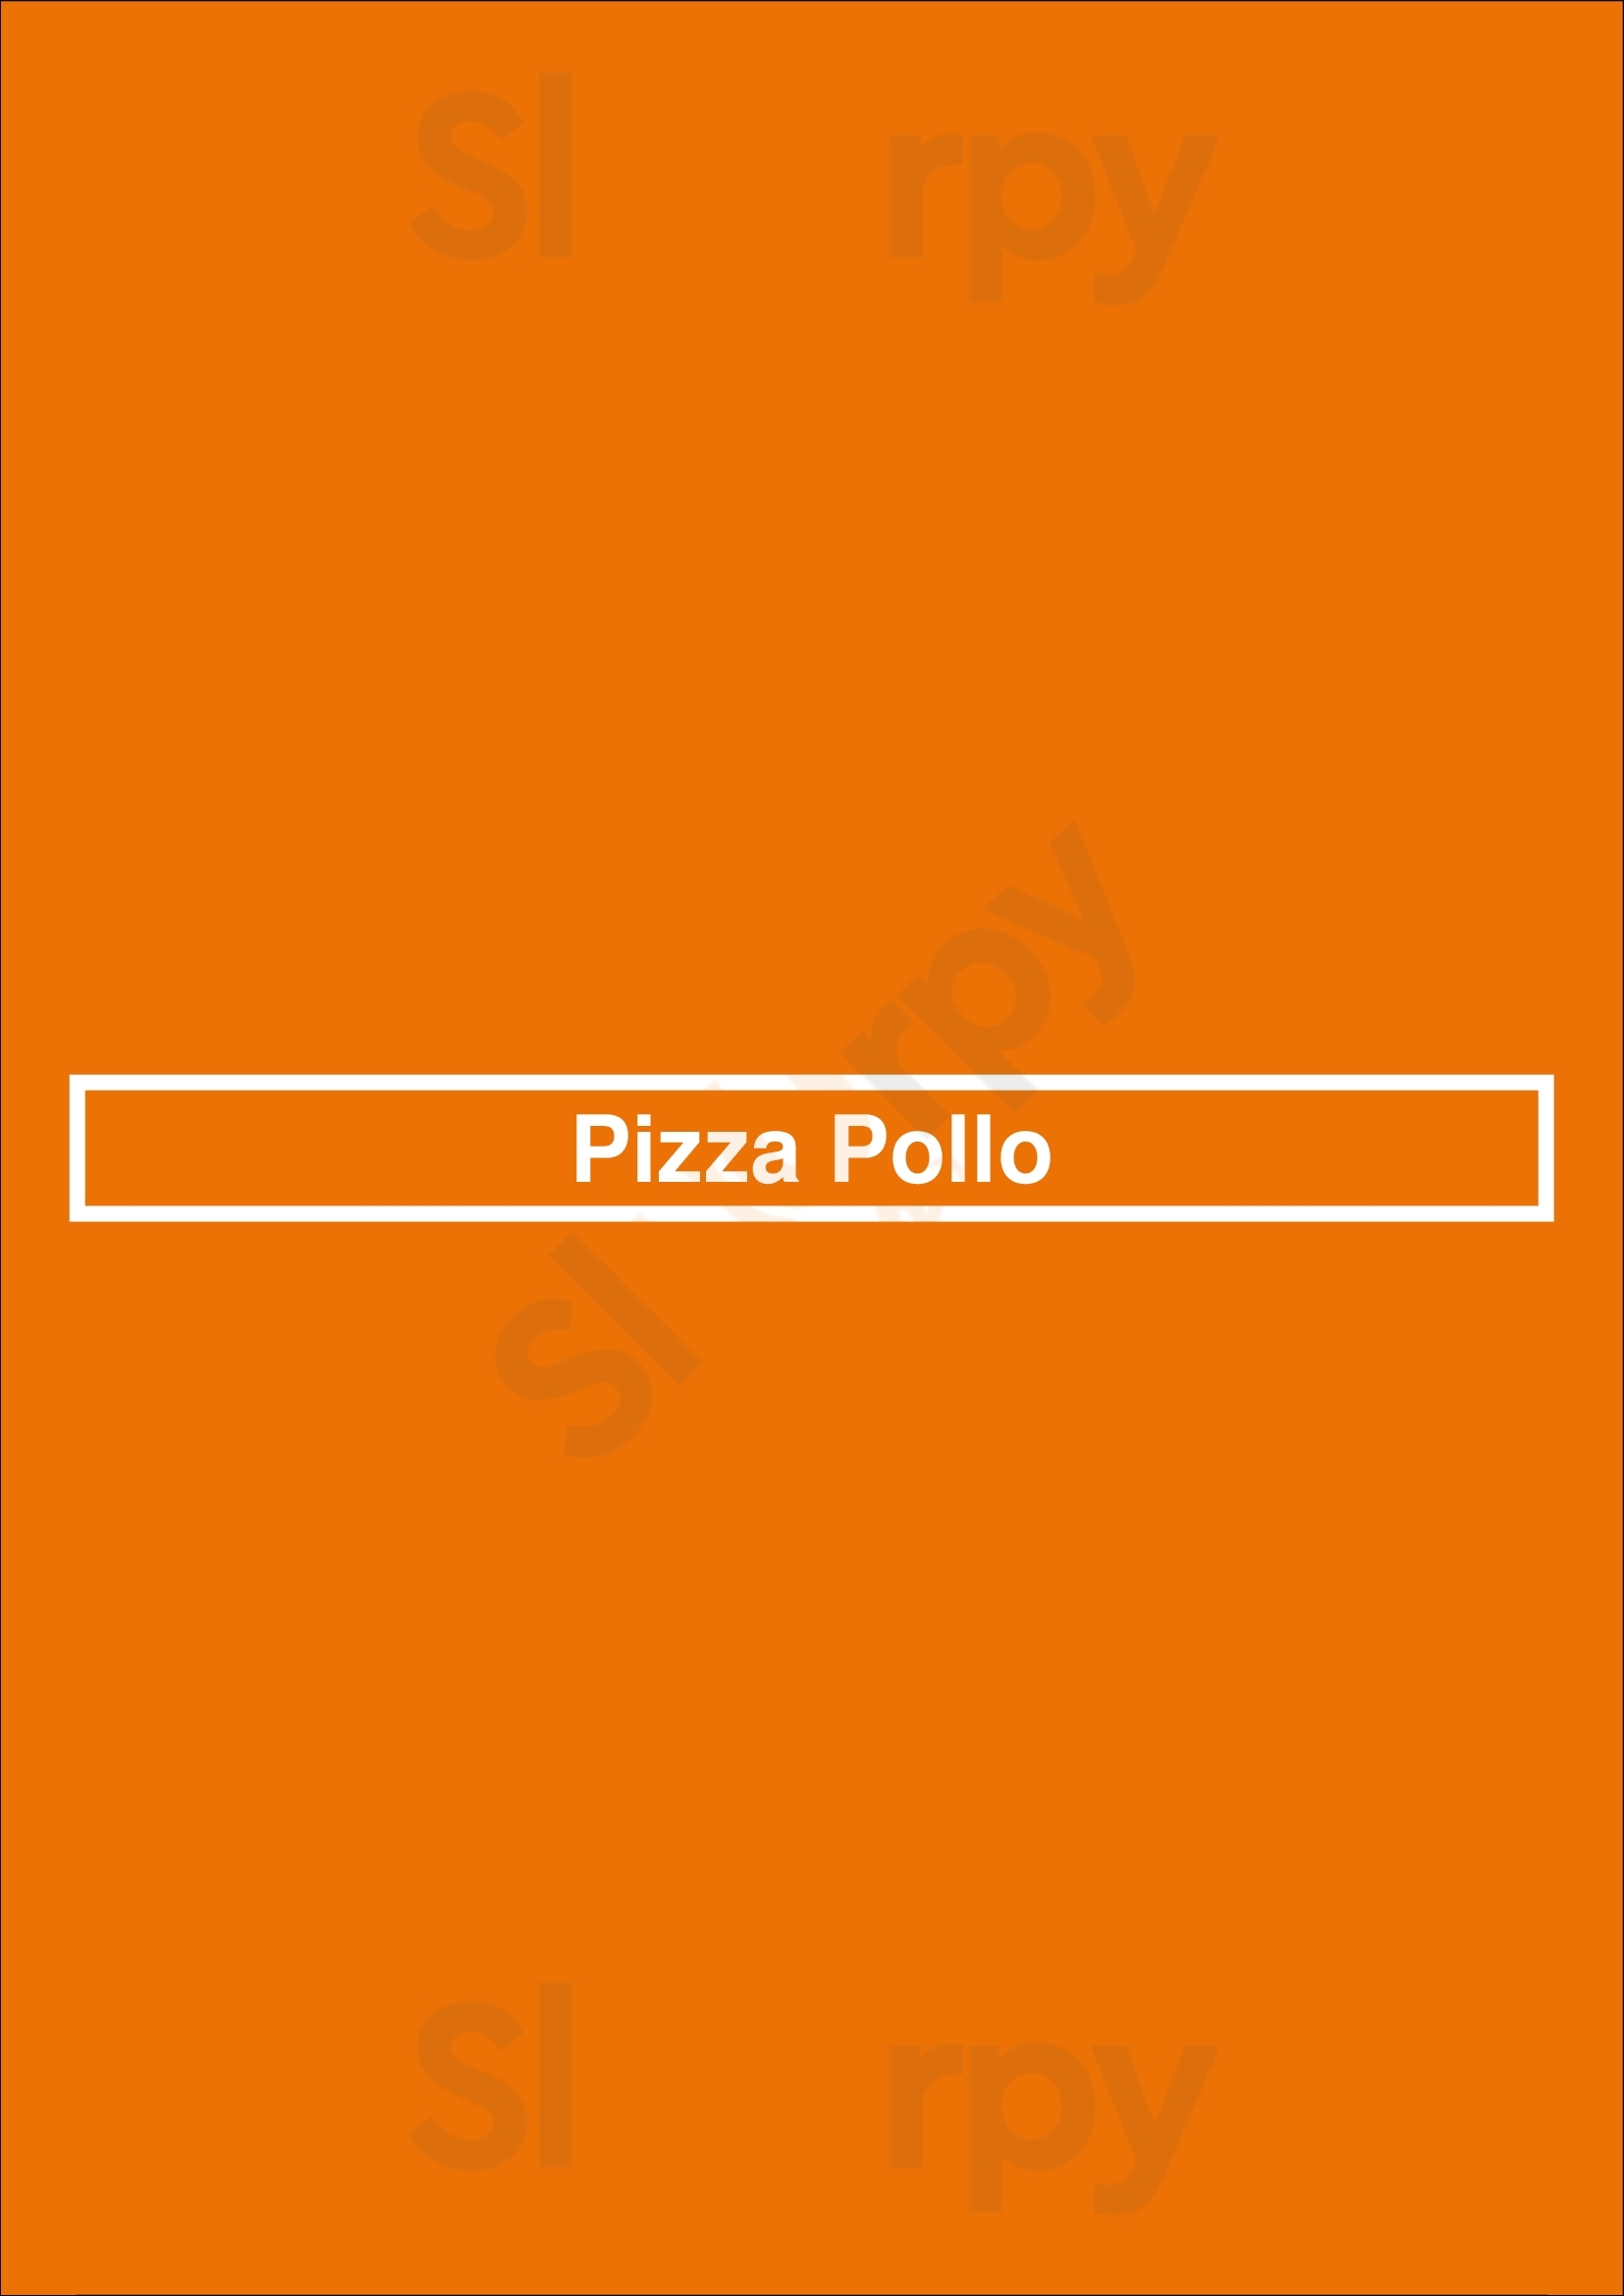 Pizza Pollo London Menu - 1